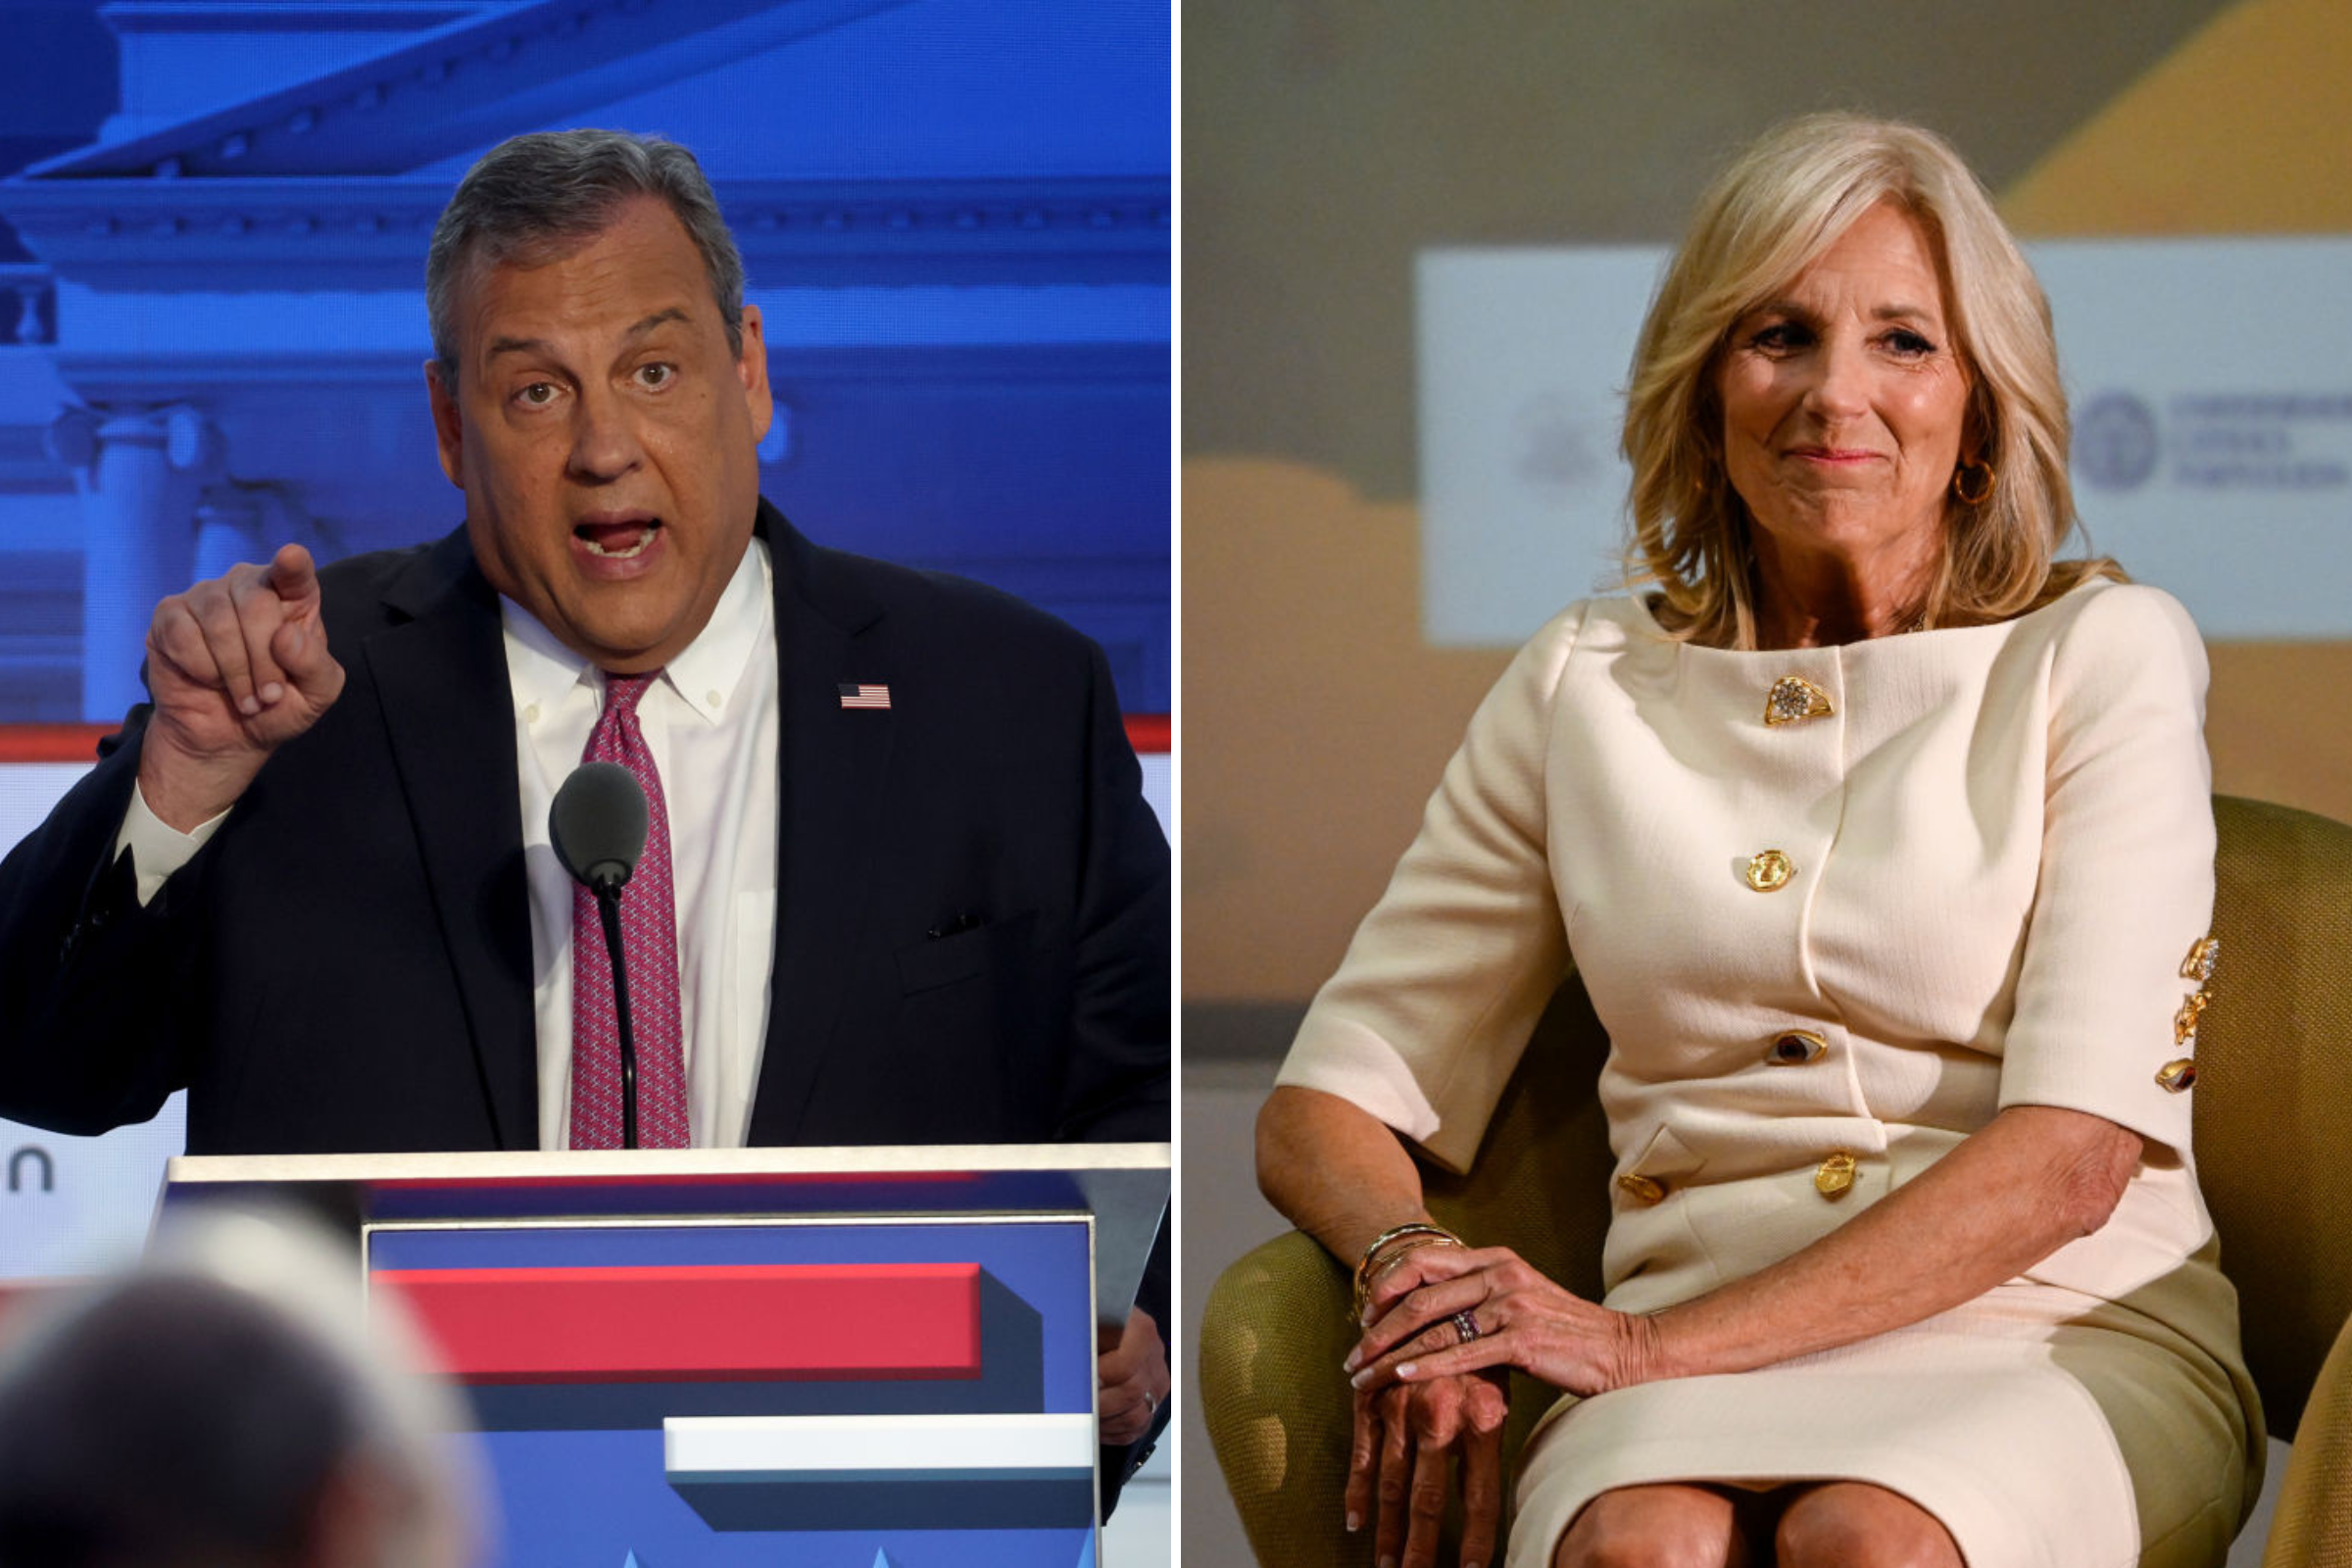 Chris Christie attaque Jill Biden pendant le débat suscite la fureur : « dégoûtant »